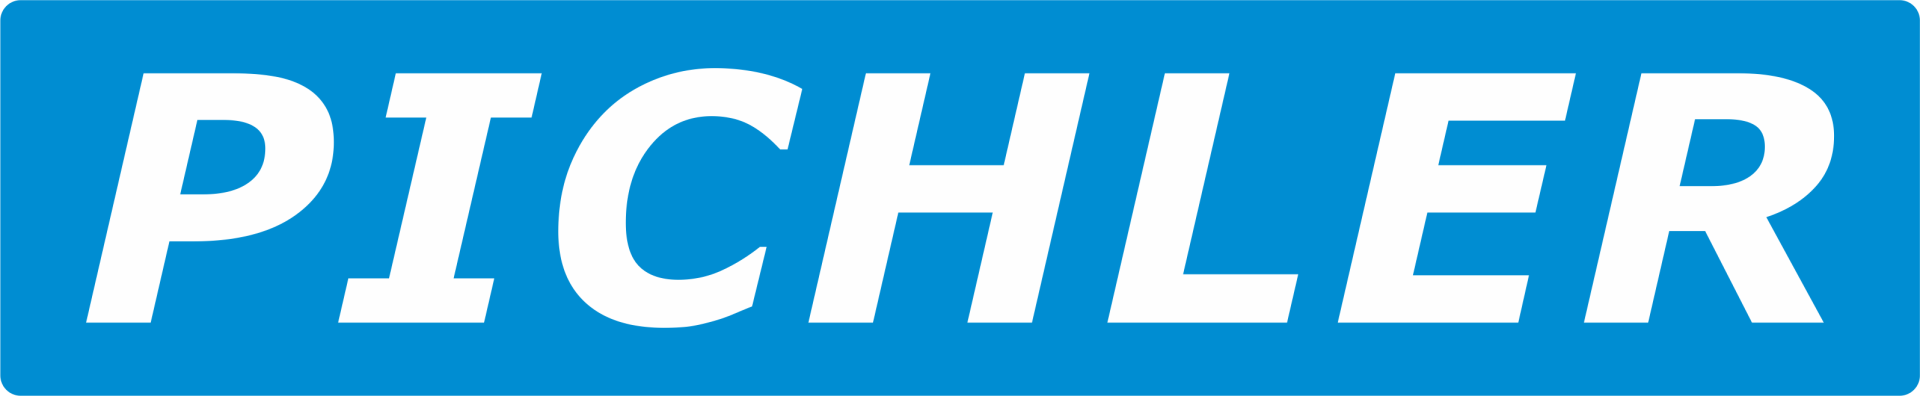 pichler logo.png